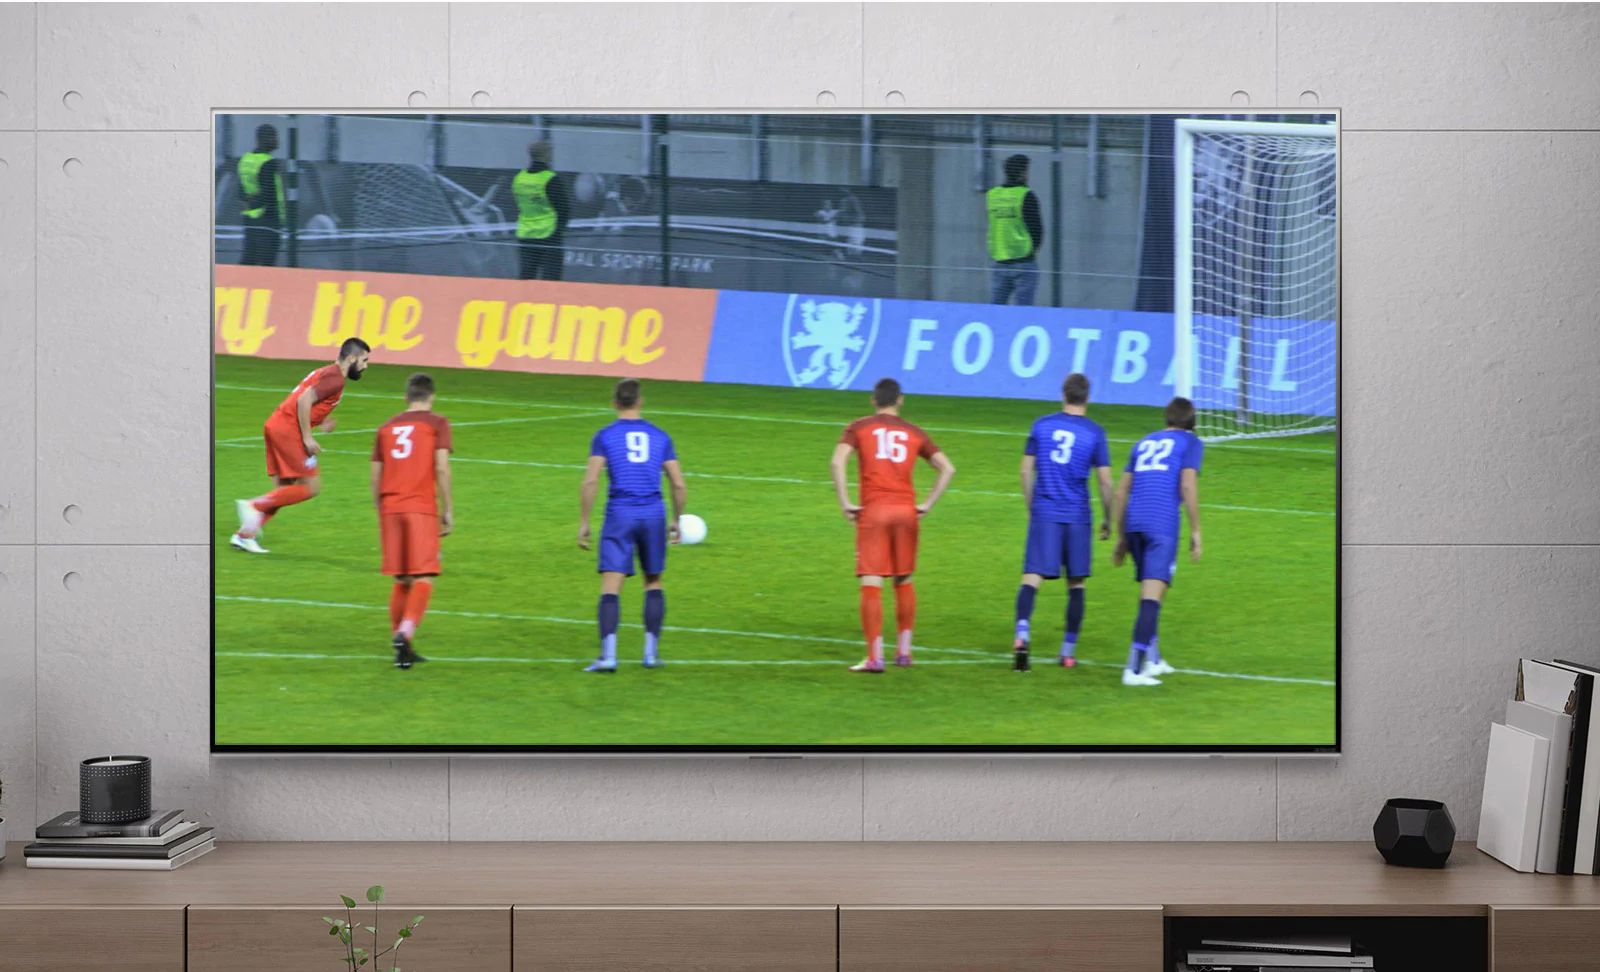 شاشة تلفزيون يظهر عليها أحد لاعبي كرة القدم خلال تسجيل ركلة جزاء (تشغيل الفيديو)